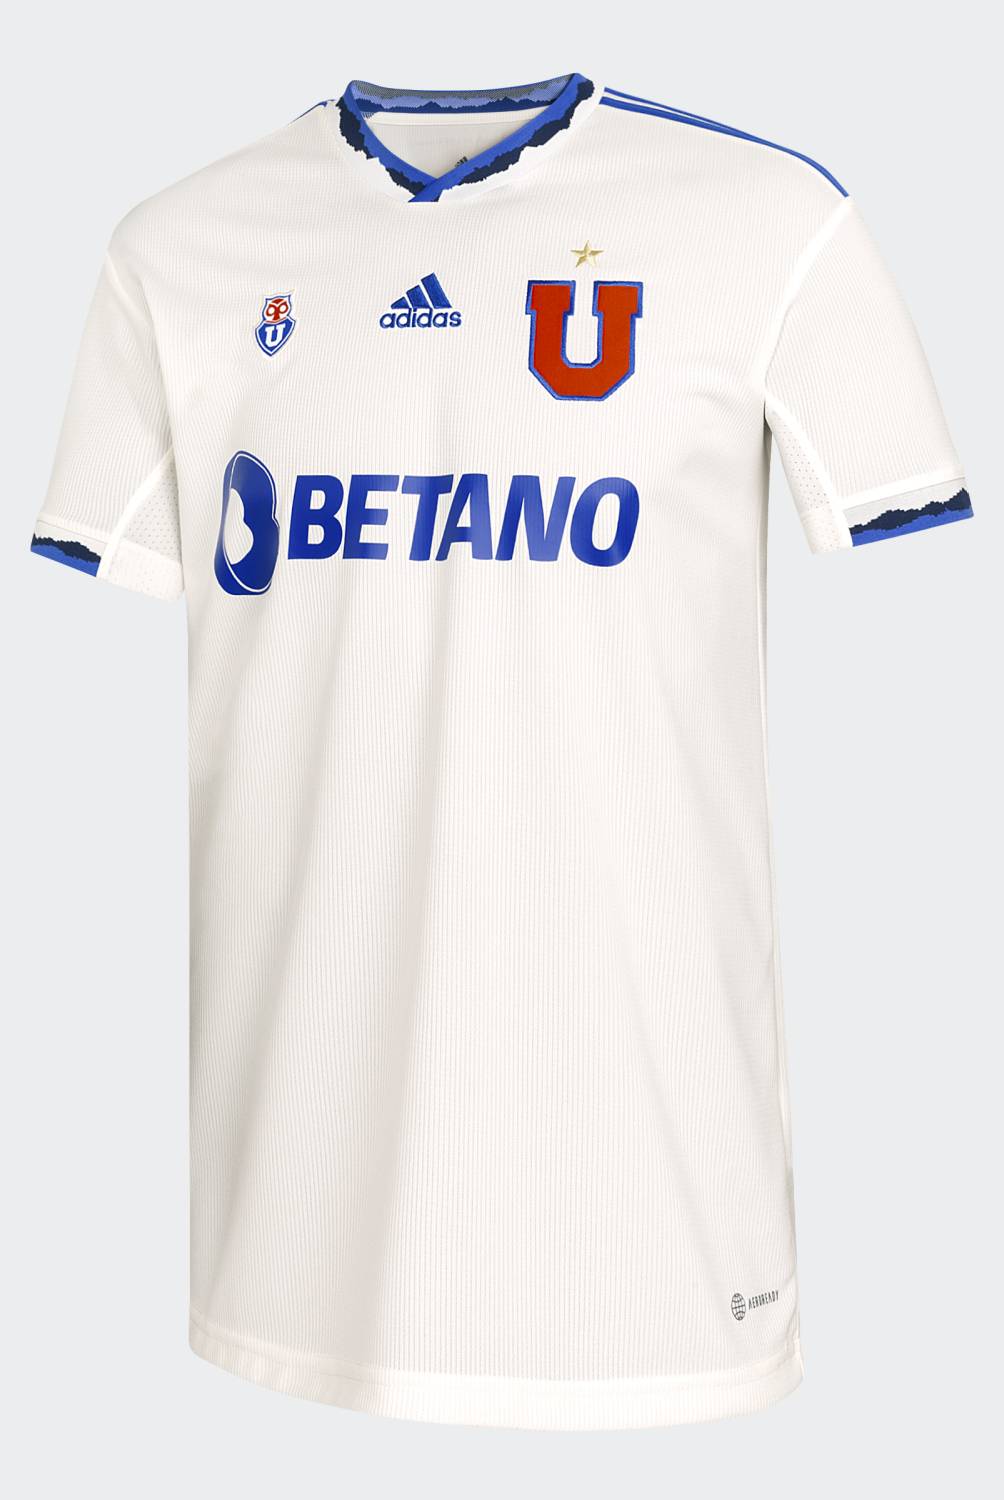 ADIDAS - Adidas Camiseta de Fútbol Univesidad de Chile Local Hombre